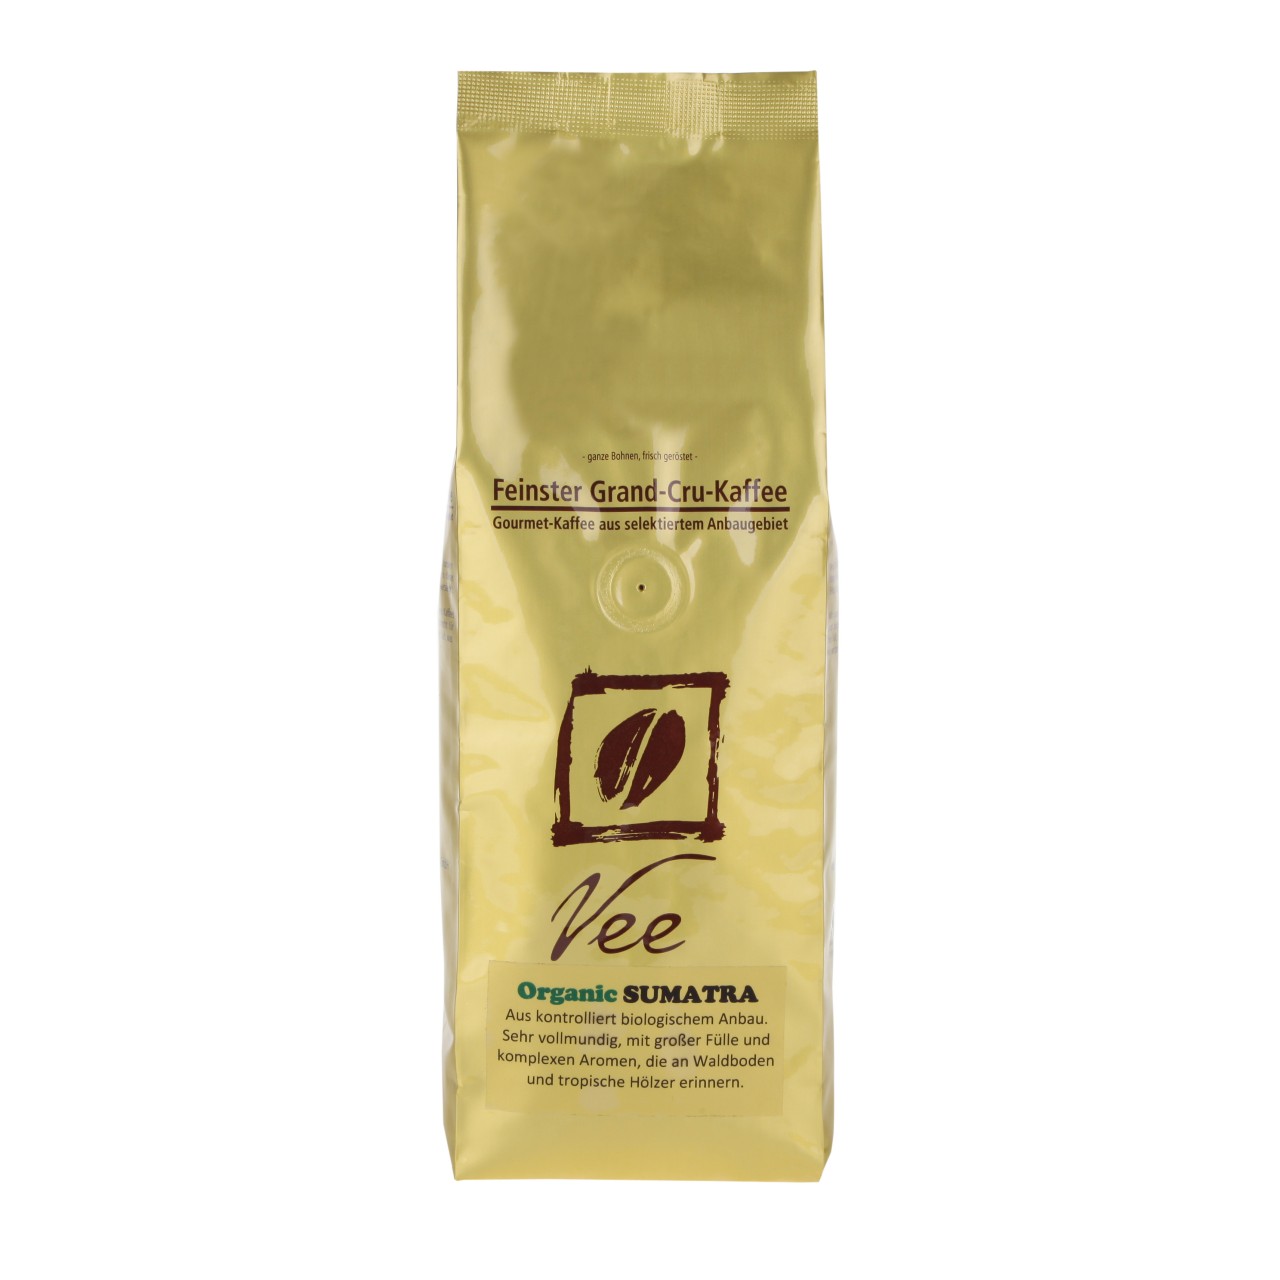 VEE Kaffee Vee Coffee Organic Sumatra